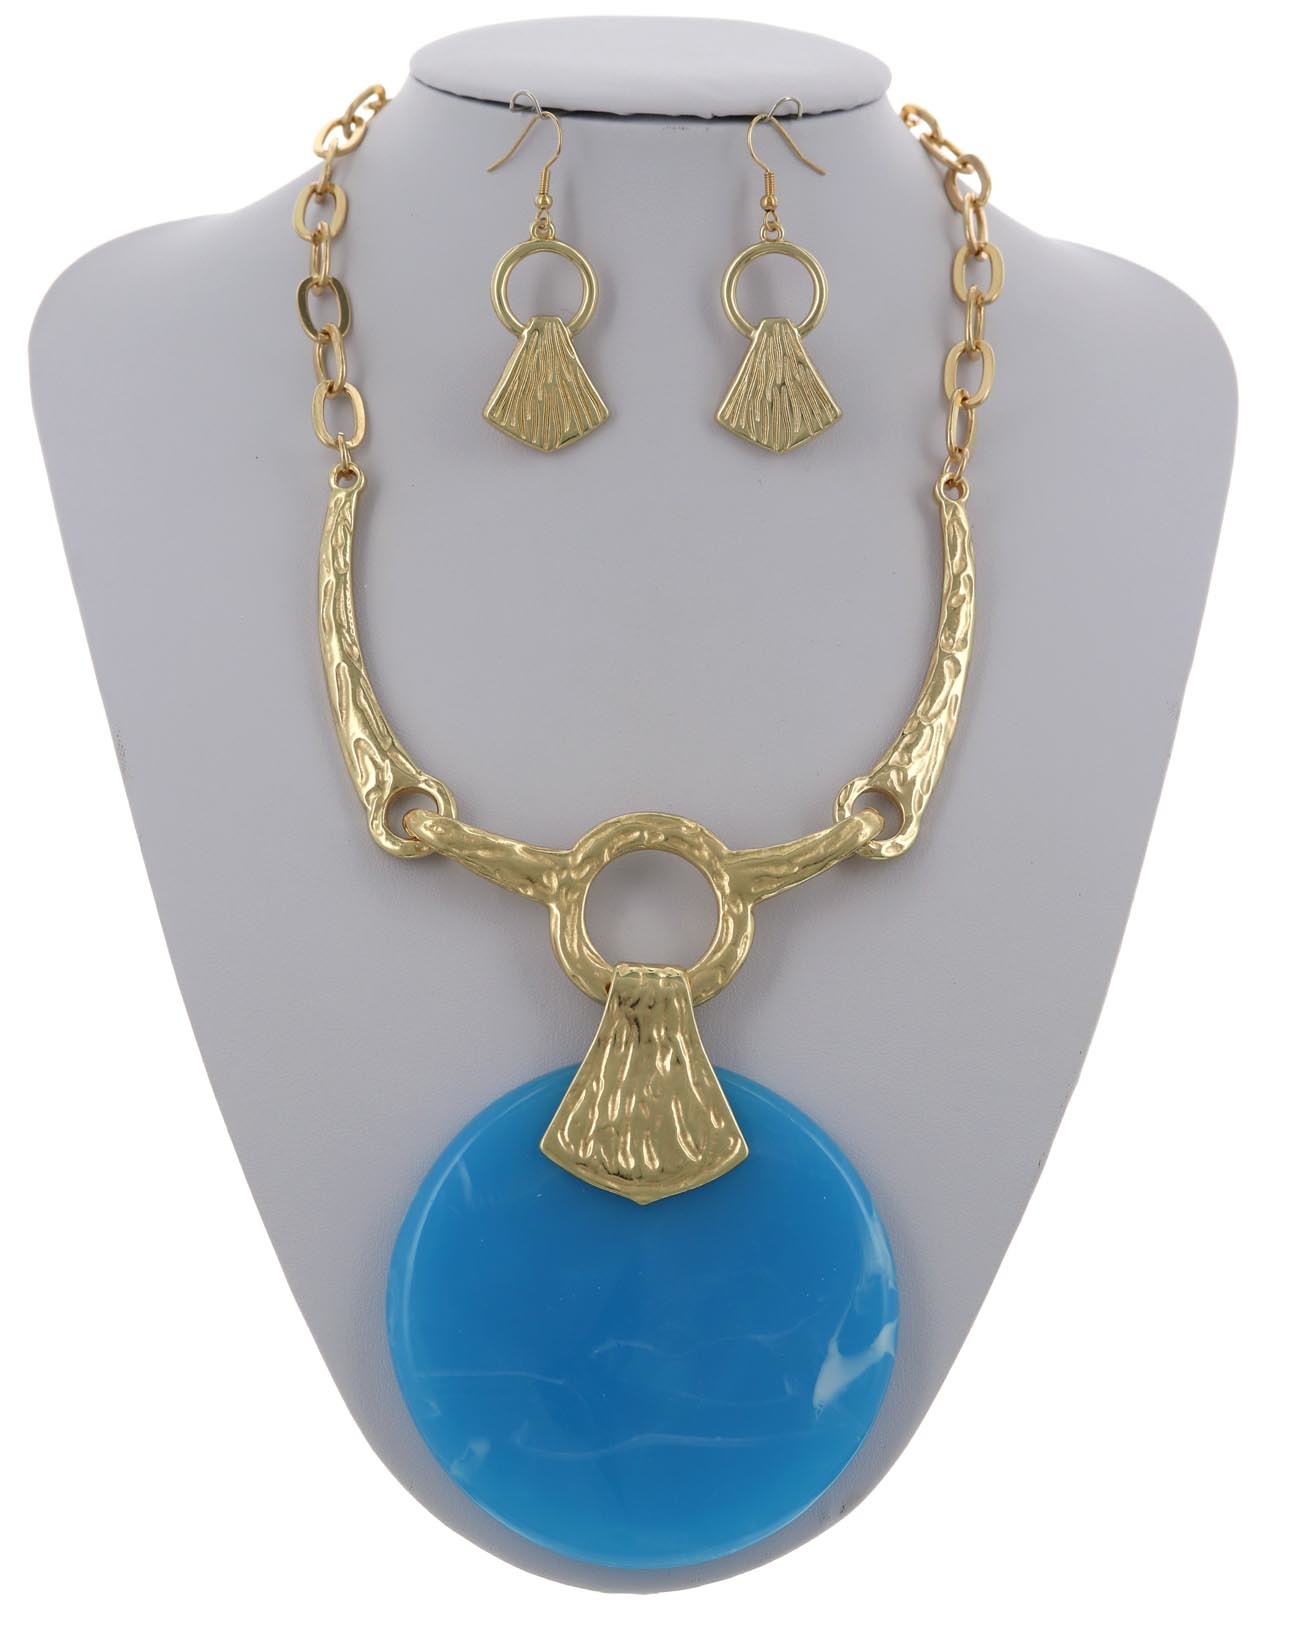 https://cdn.shoplightspeed.com/shops/616255/files/45799611/lady-luck-necklace-set-blue.jpg